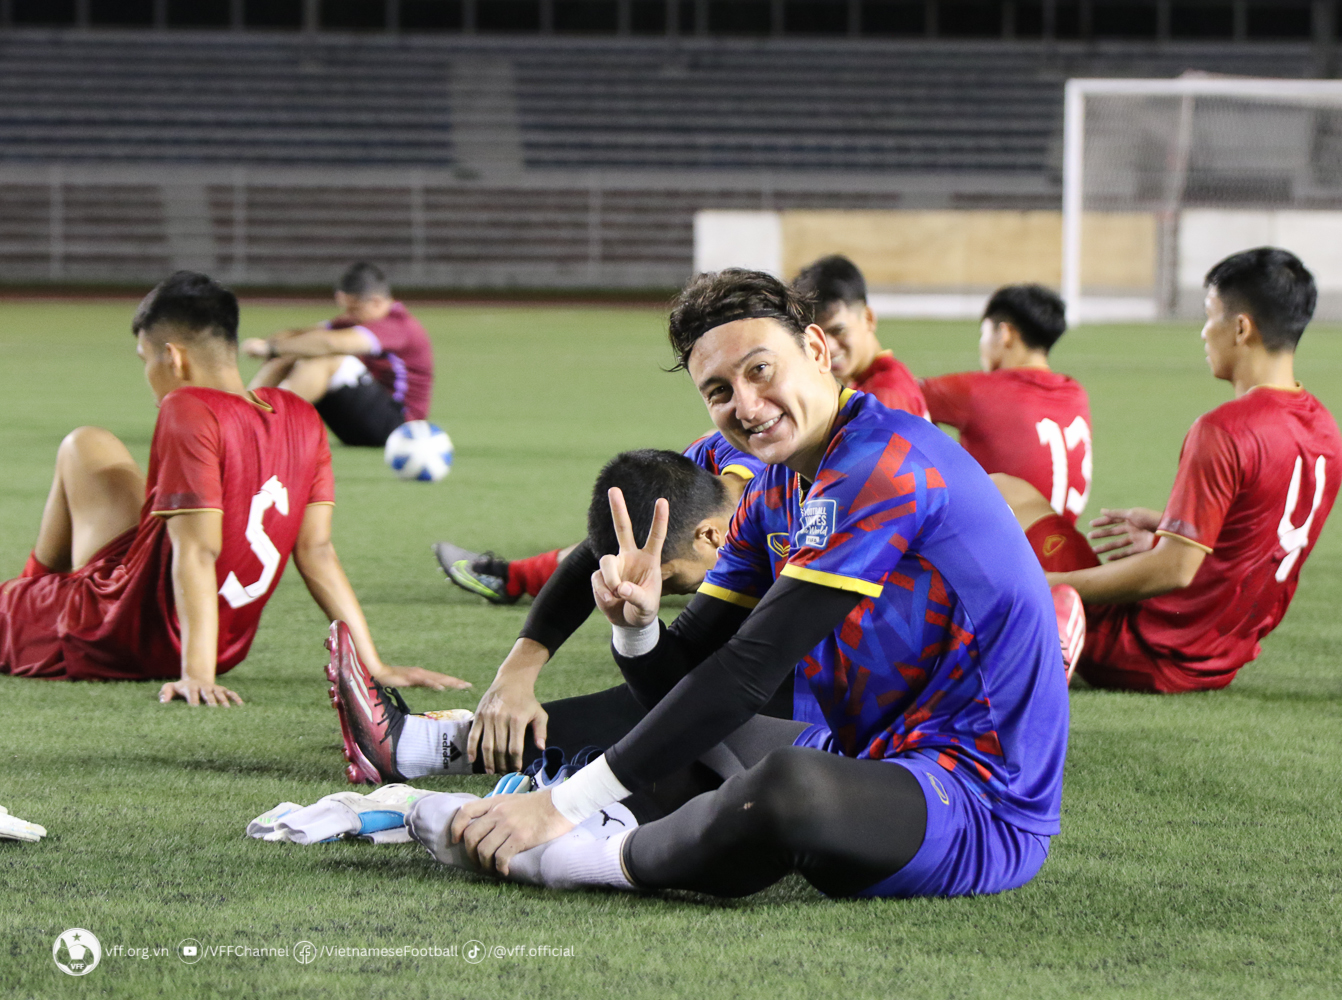 Tin cực vui, FPT Play thành công bản quyền trận đội tuyển Việt Nam - Philippines - Ảnh 2.